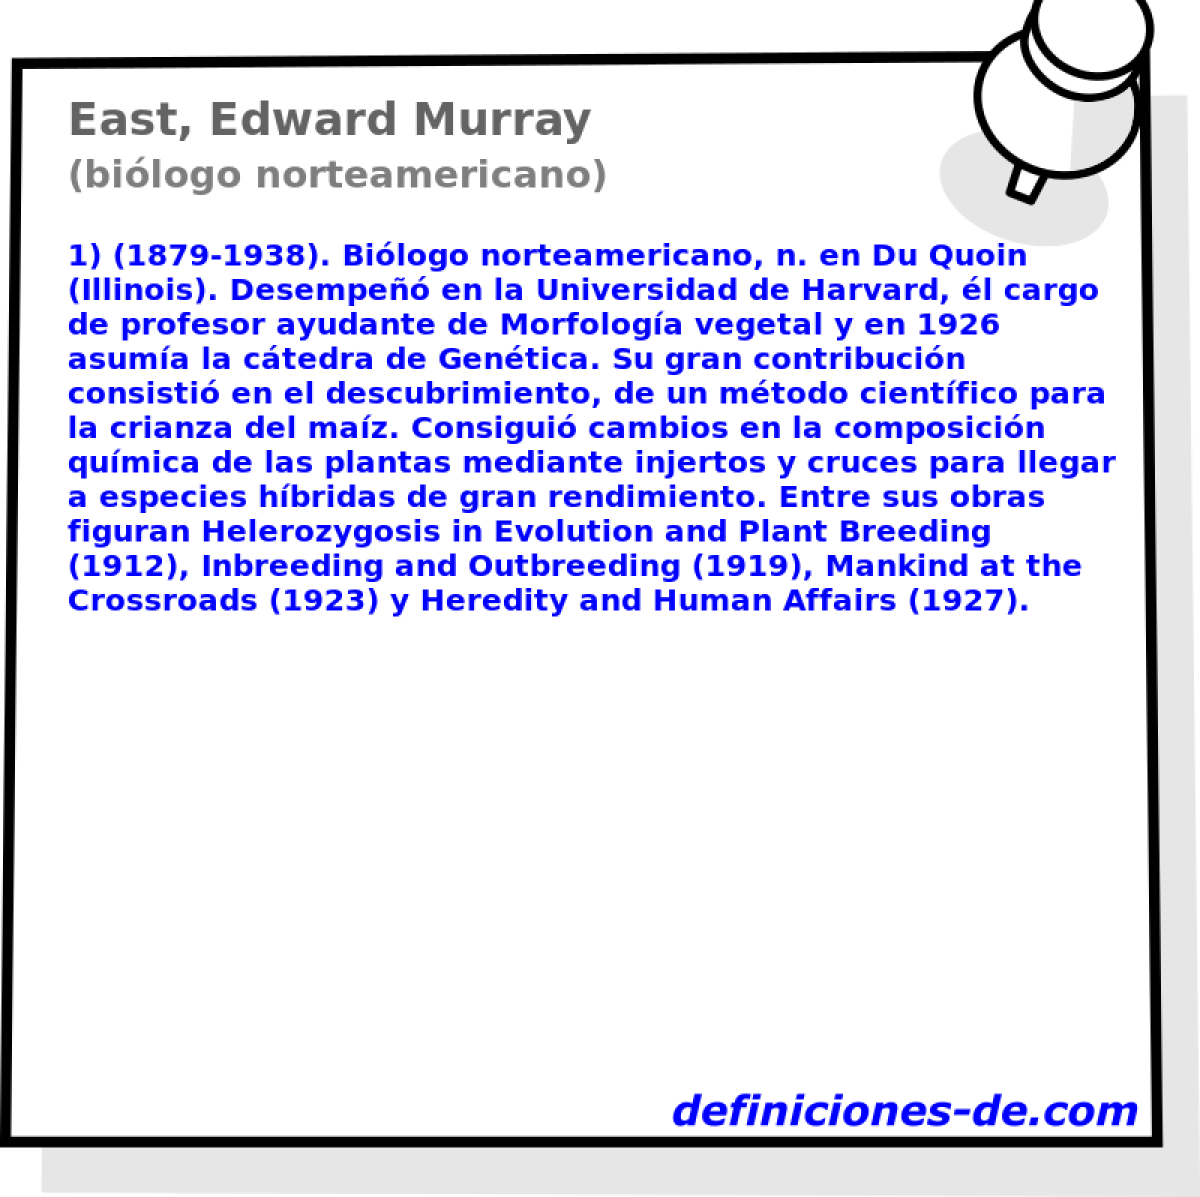 East, Edward Murray (bilogo norteamericano)